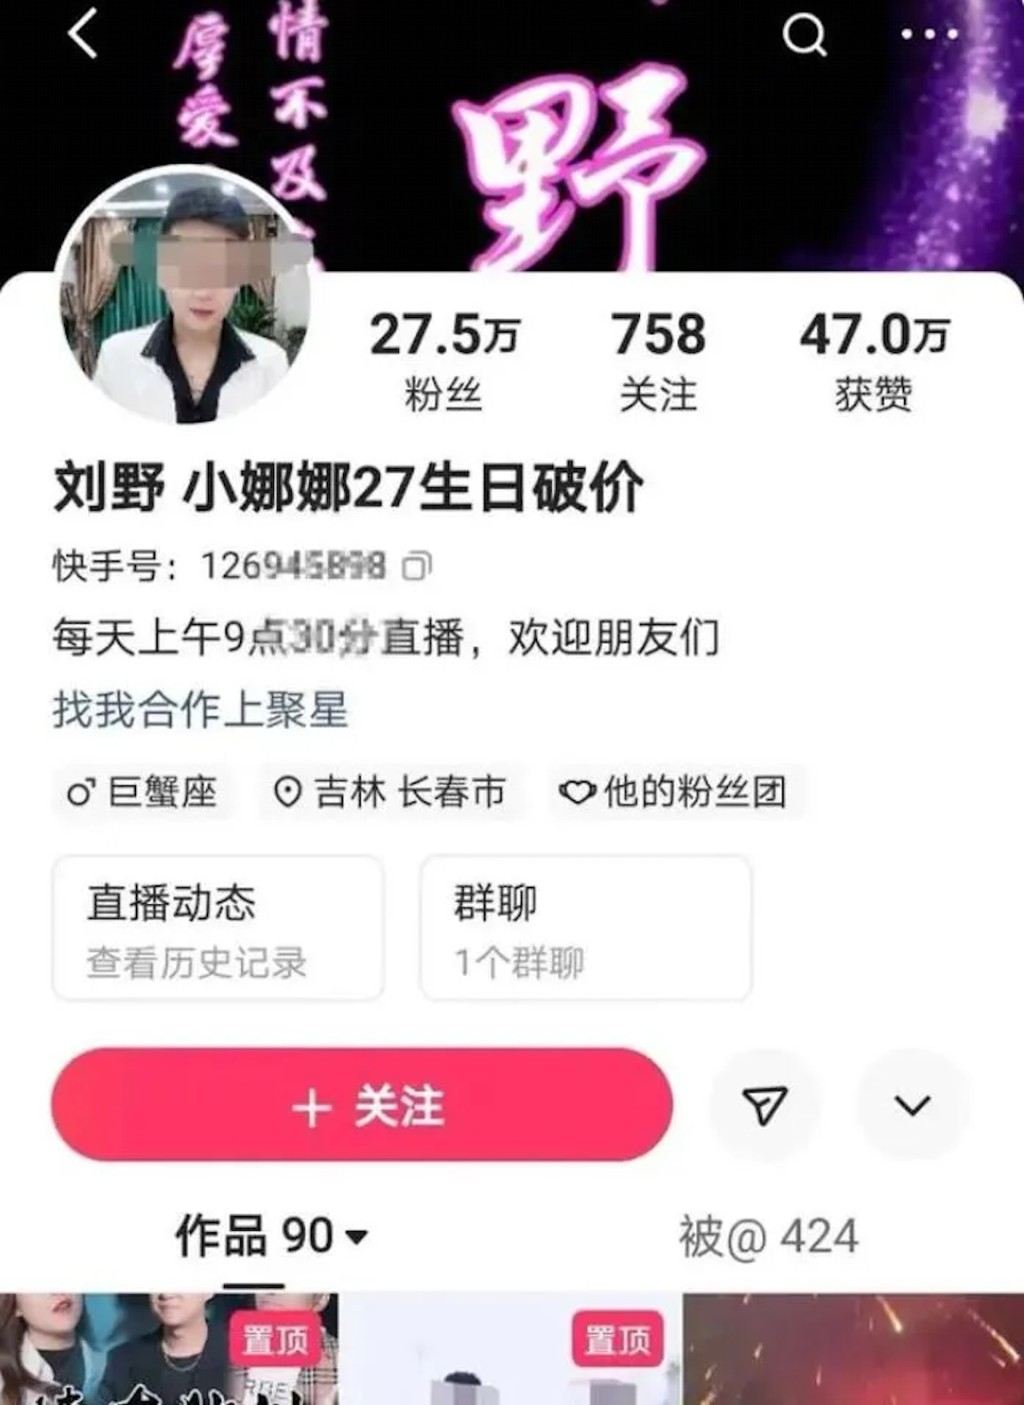 刘野也有逾27万粉丝。